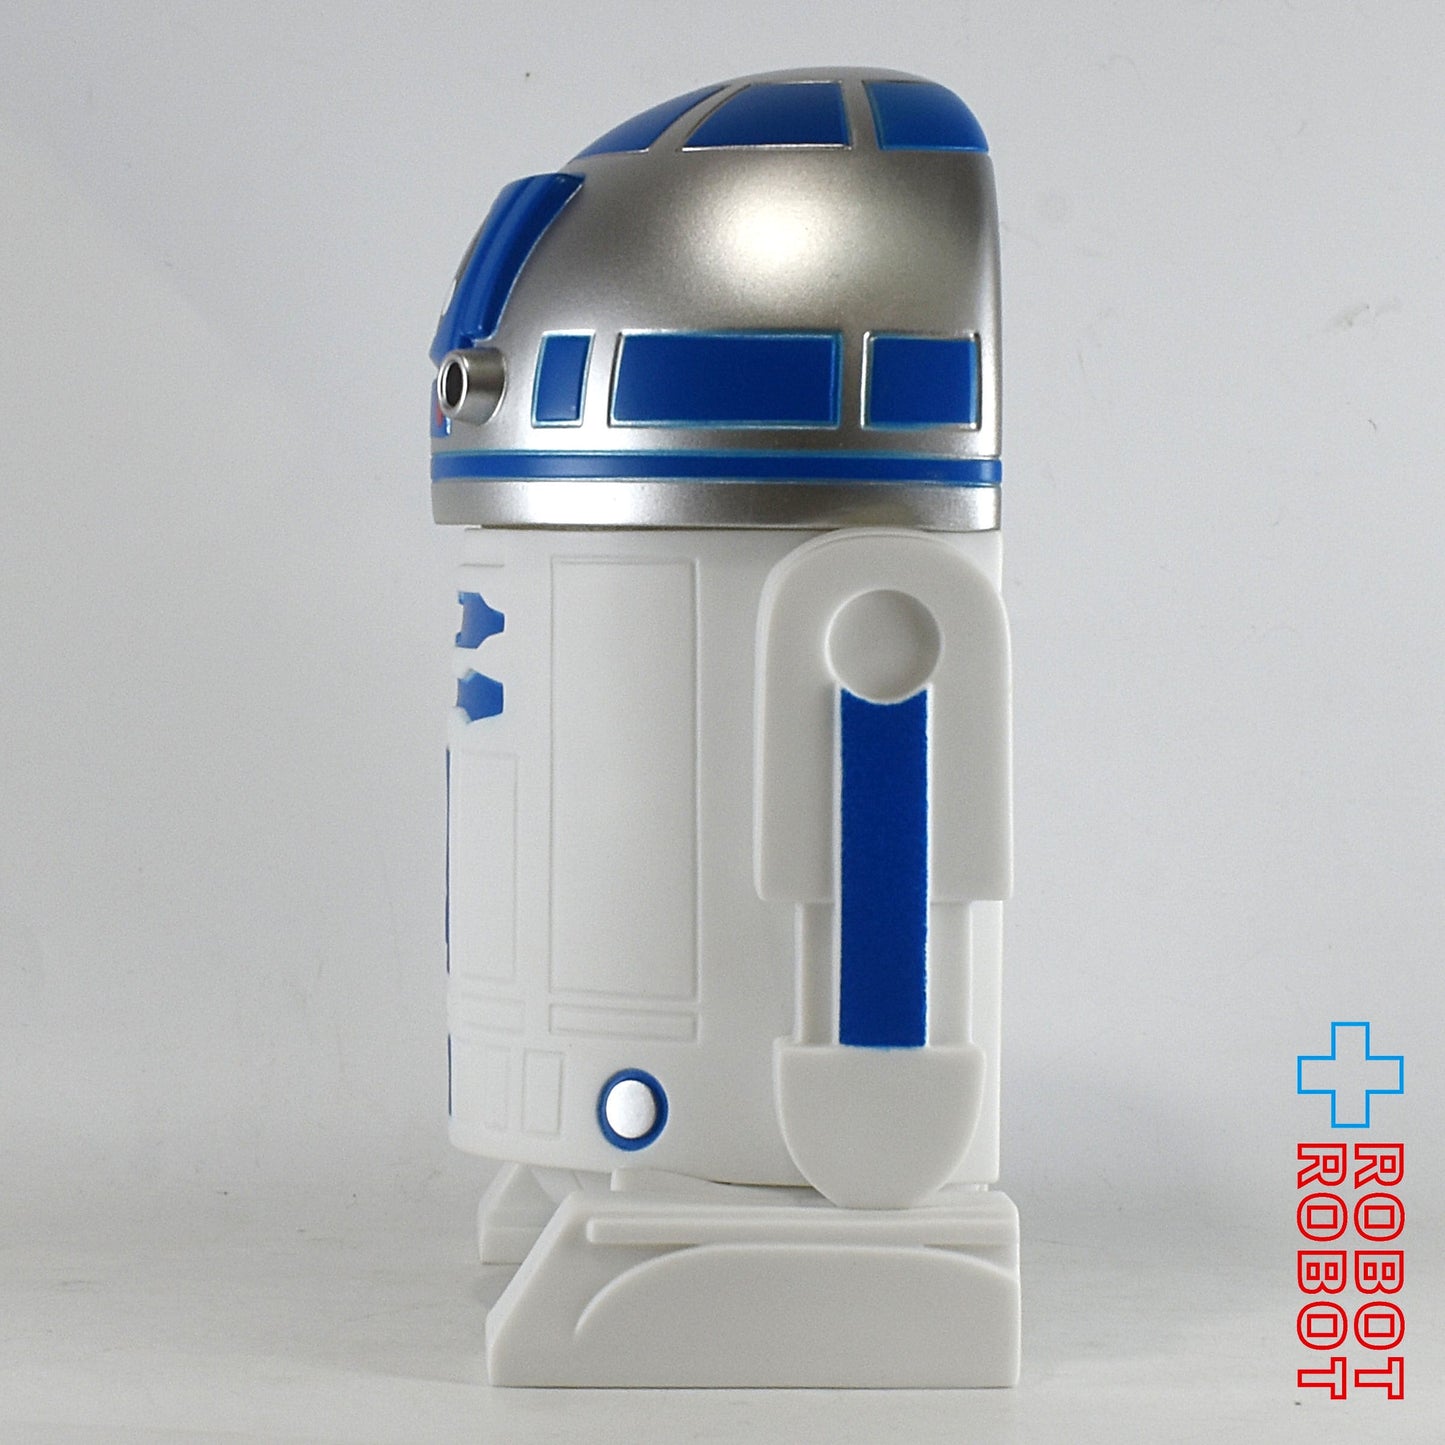 スター・ウォーズ R2-D2 PVC貯金箱 モノグラム